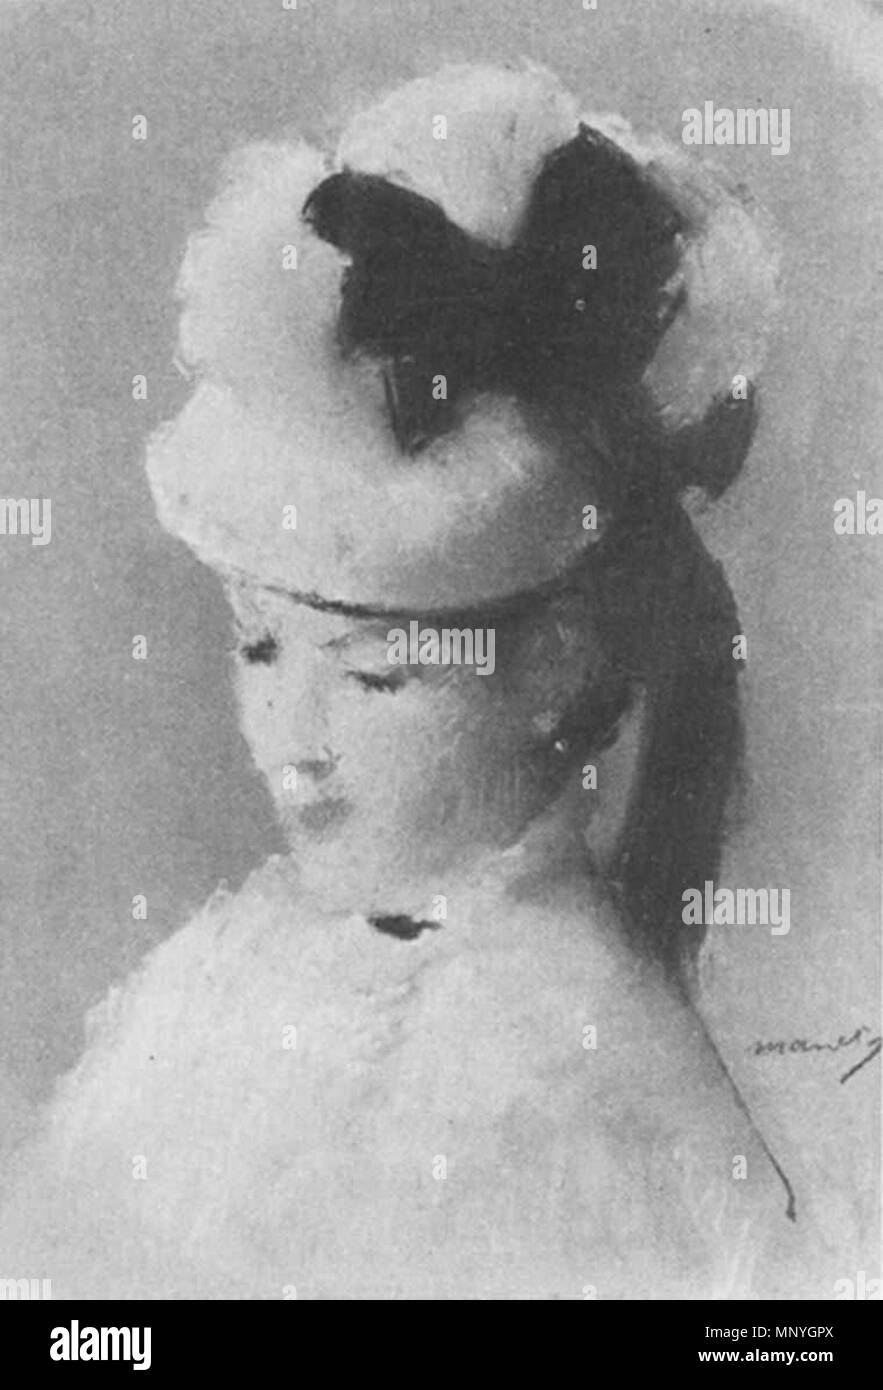 1288 Édouard Manet - Jeune Femme au chapeau blanc Stock Photo